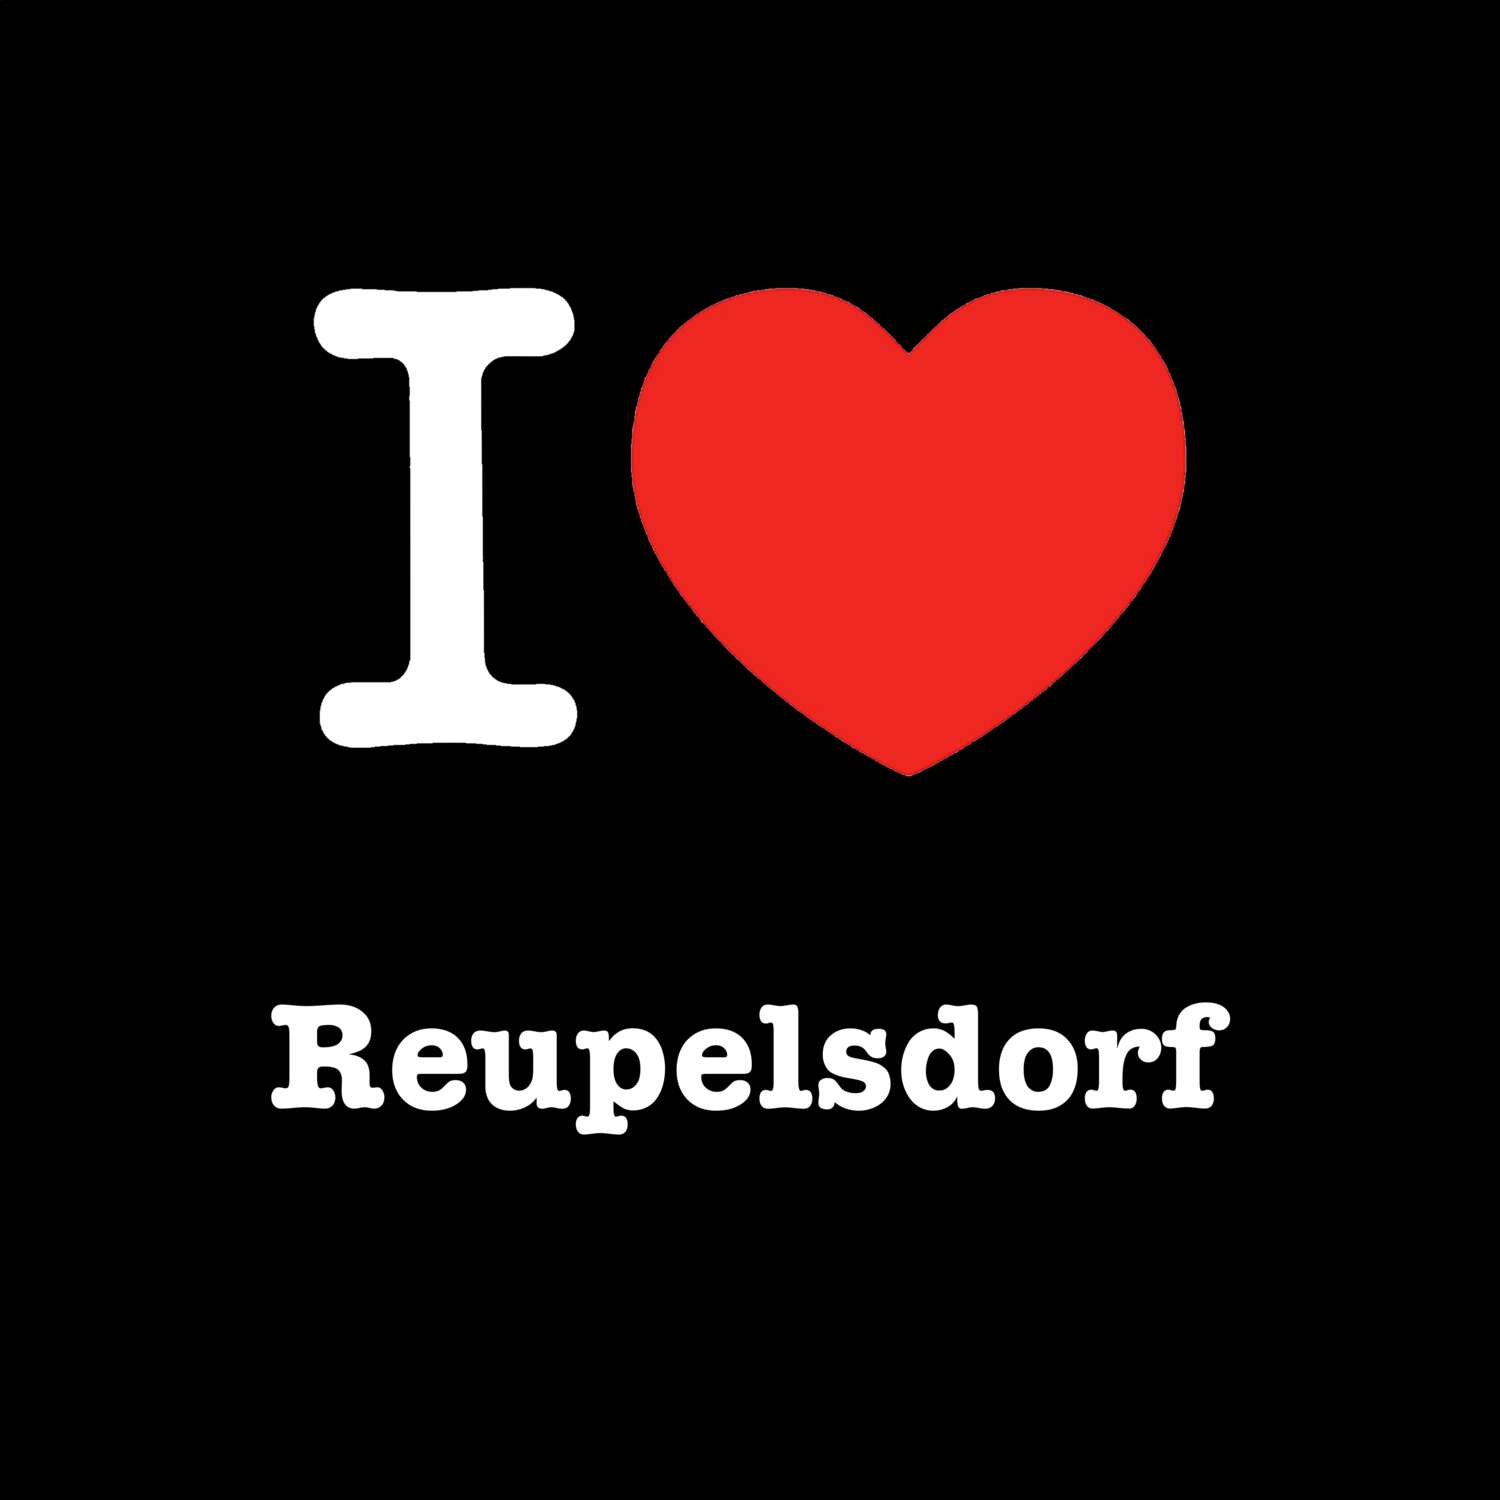 Reupelsdorf T-Shirt »I love«